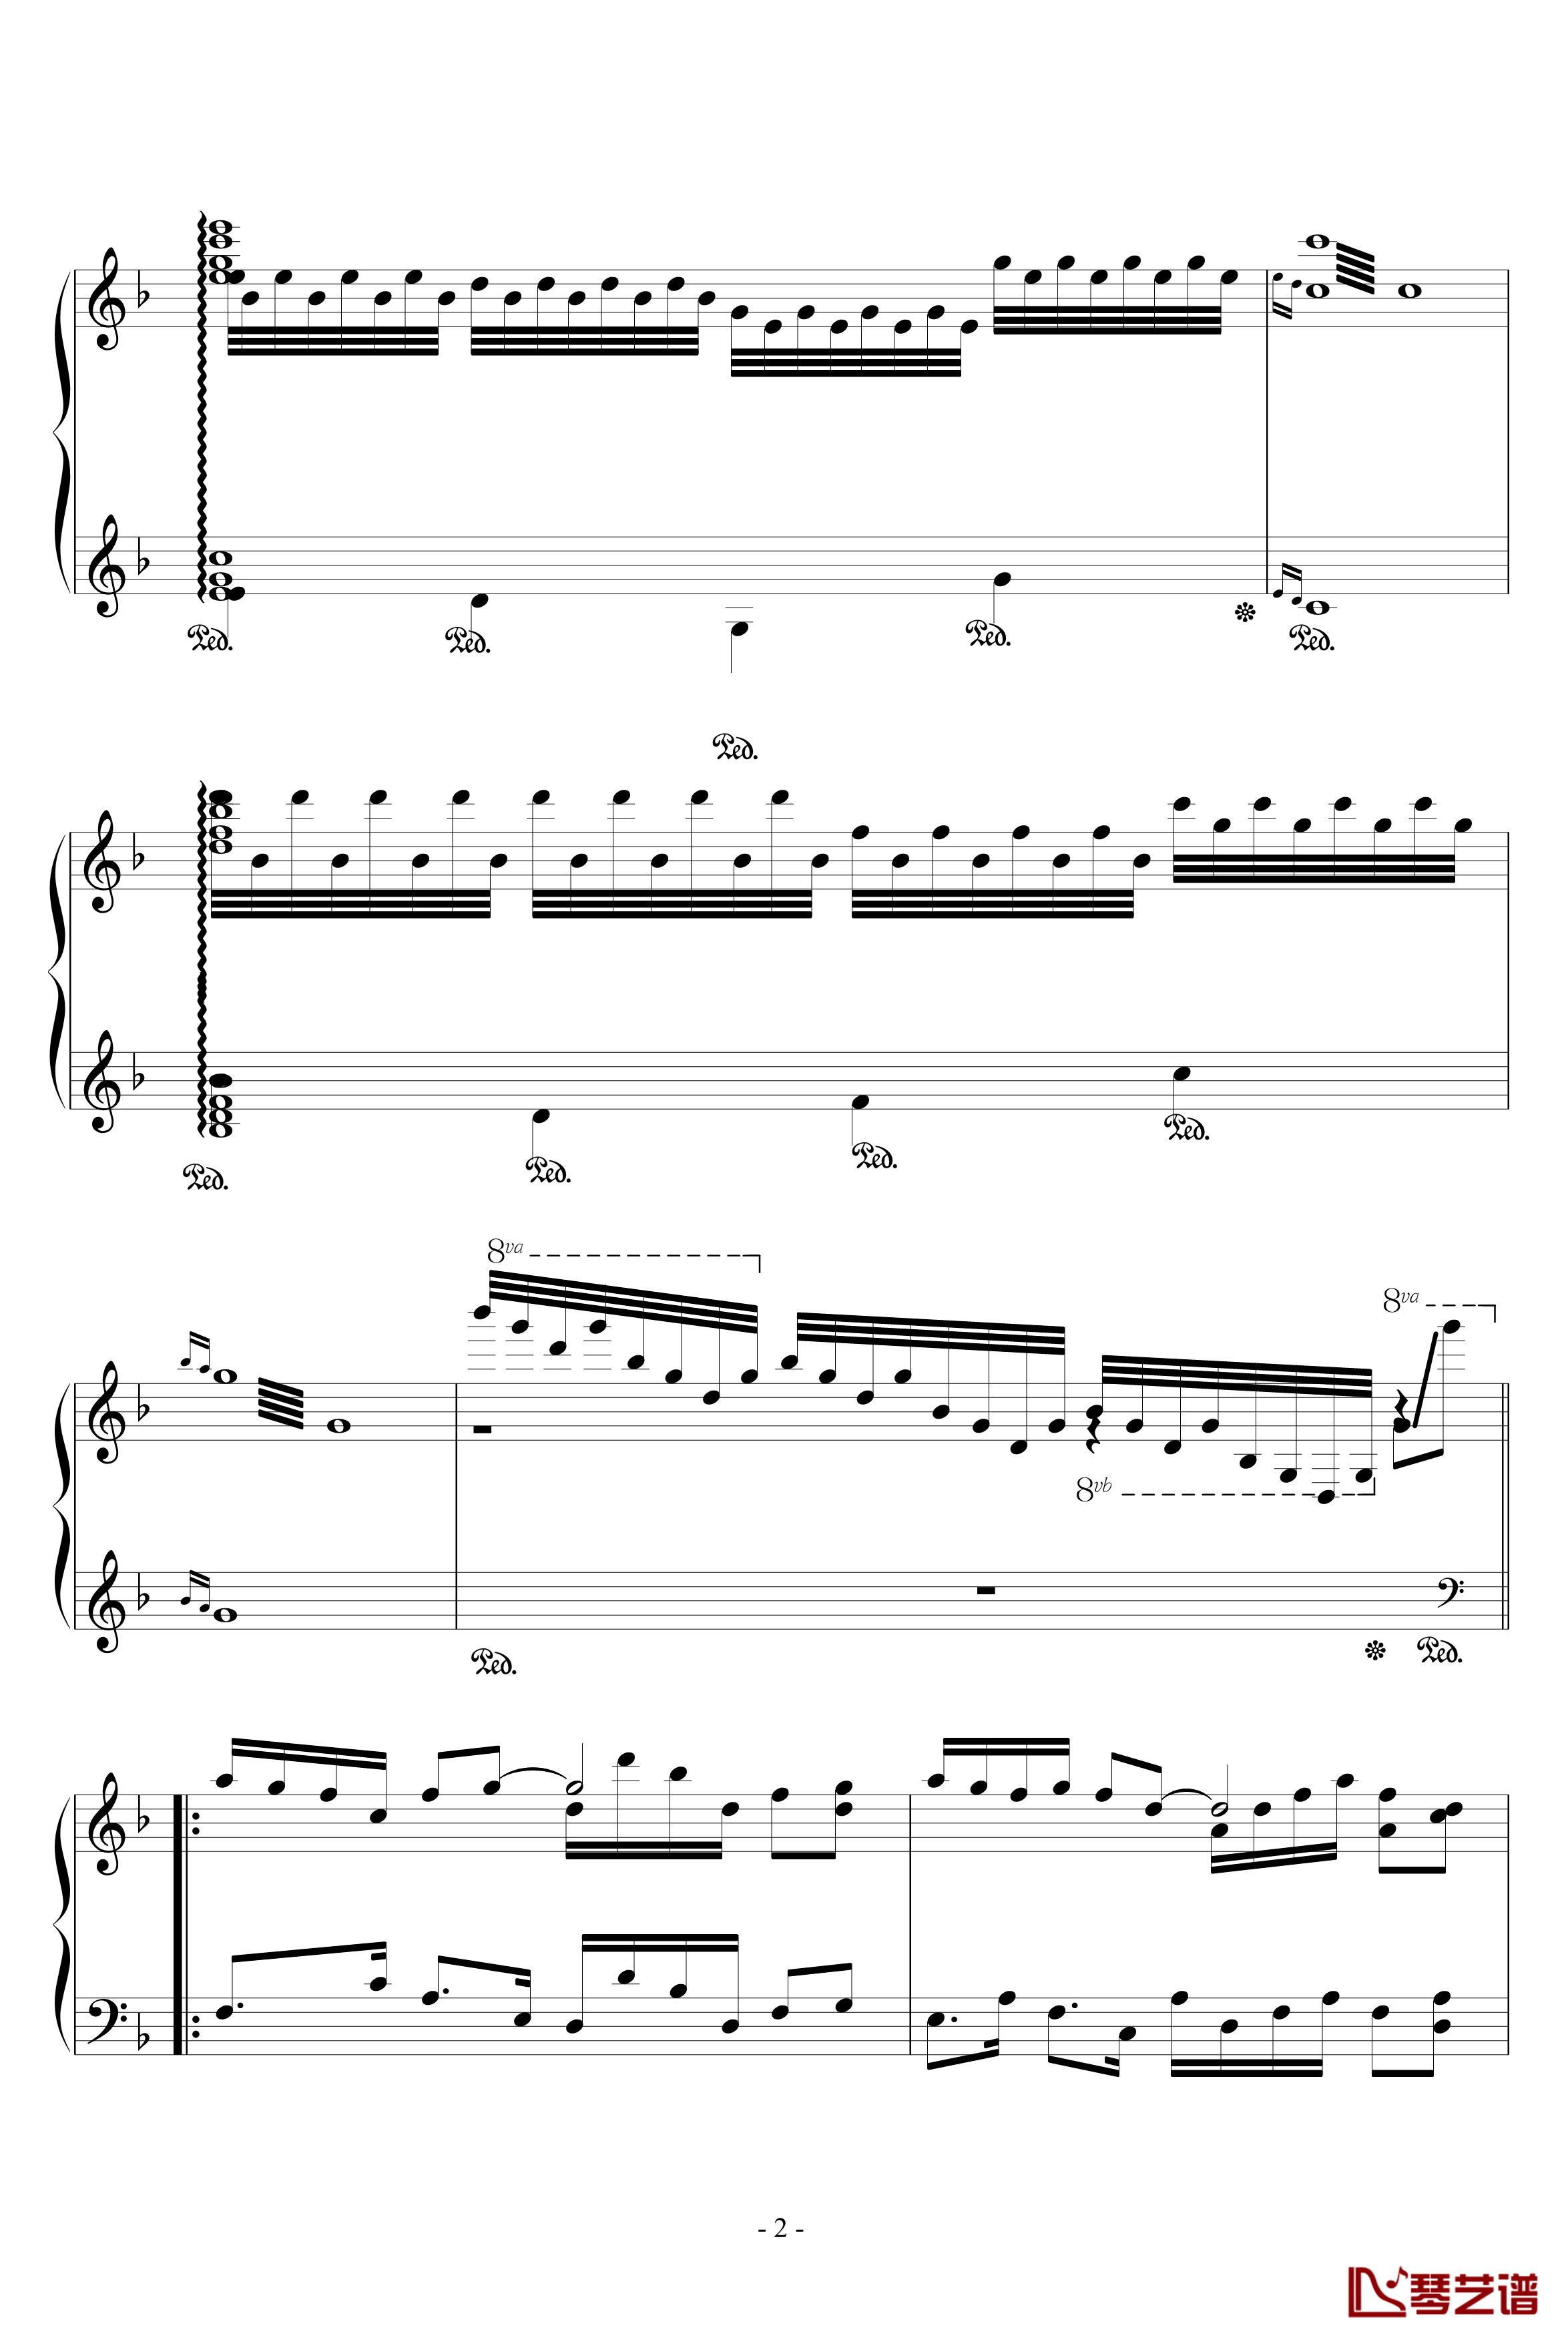 踏春主题小变奏曲钢琴谱-音乐作坊2